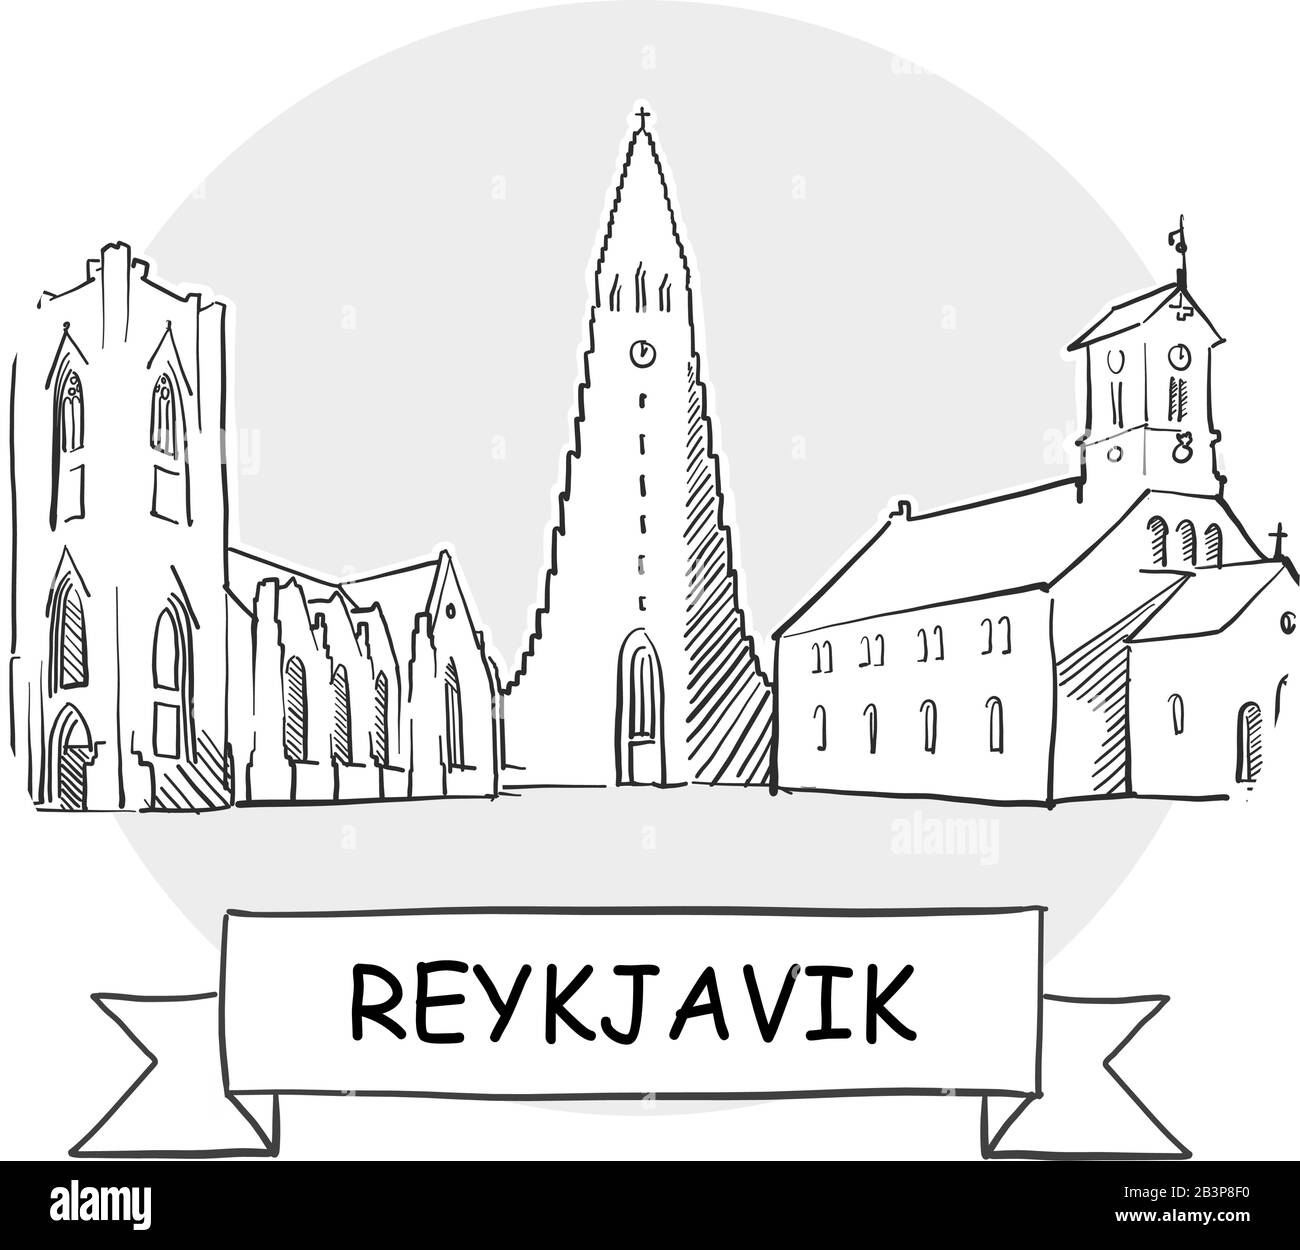 Panneau Vectoriel Reykjavik Cityscape. Illustration d'un dessin au trait avec ruban et titre. Illustration de Vecteur